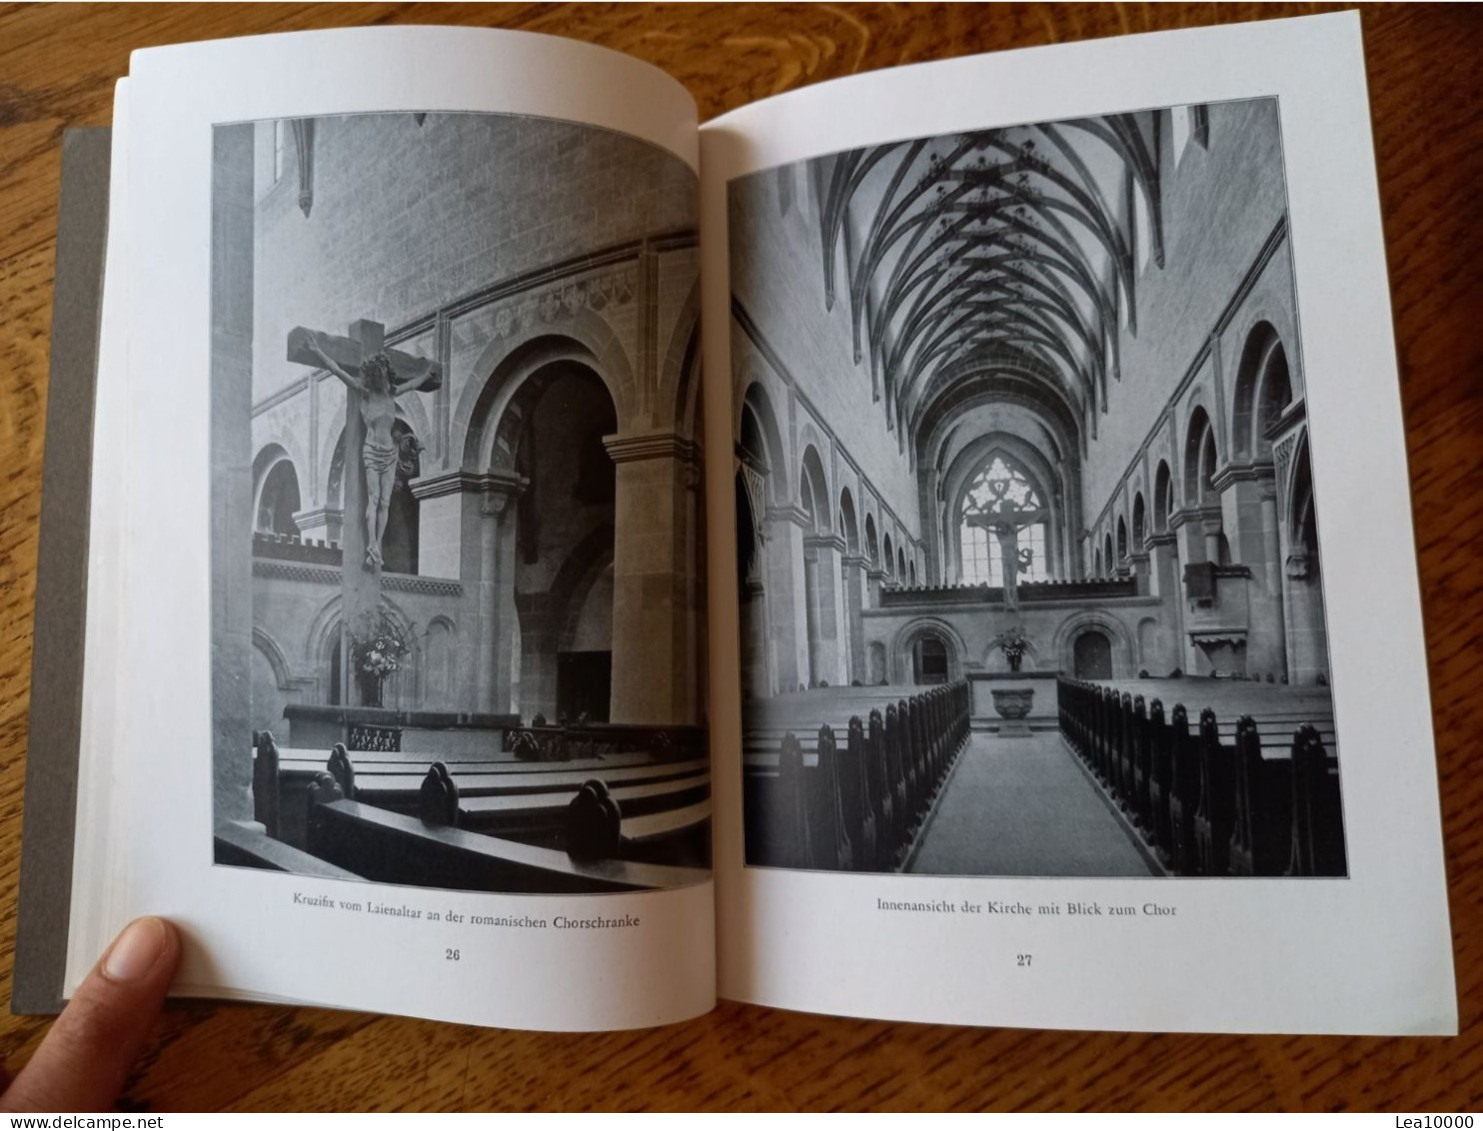 Klofter Maulbronn - Hervorragendes Booklet, 48 Seiten, viele Fotos - Bilder von Helga Glassner, text Carl Heinz Clasen